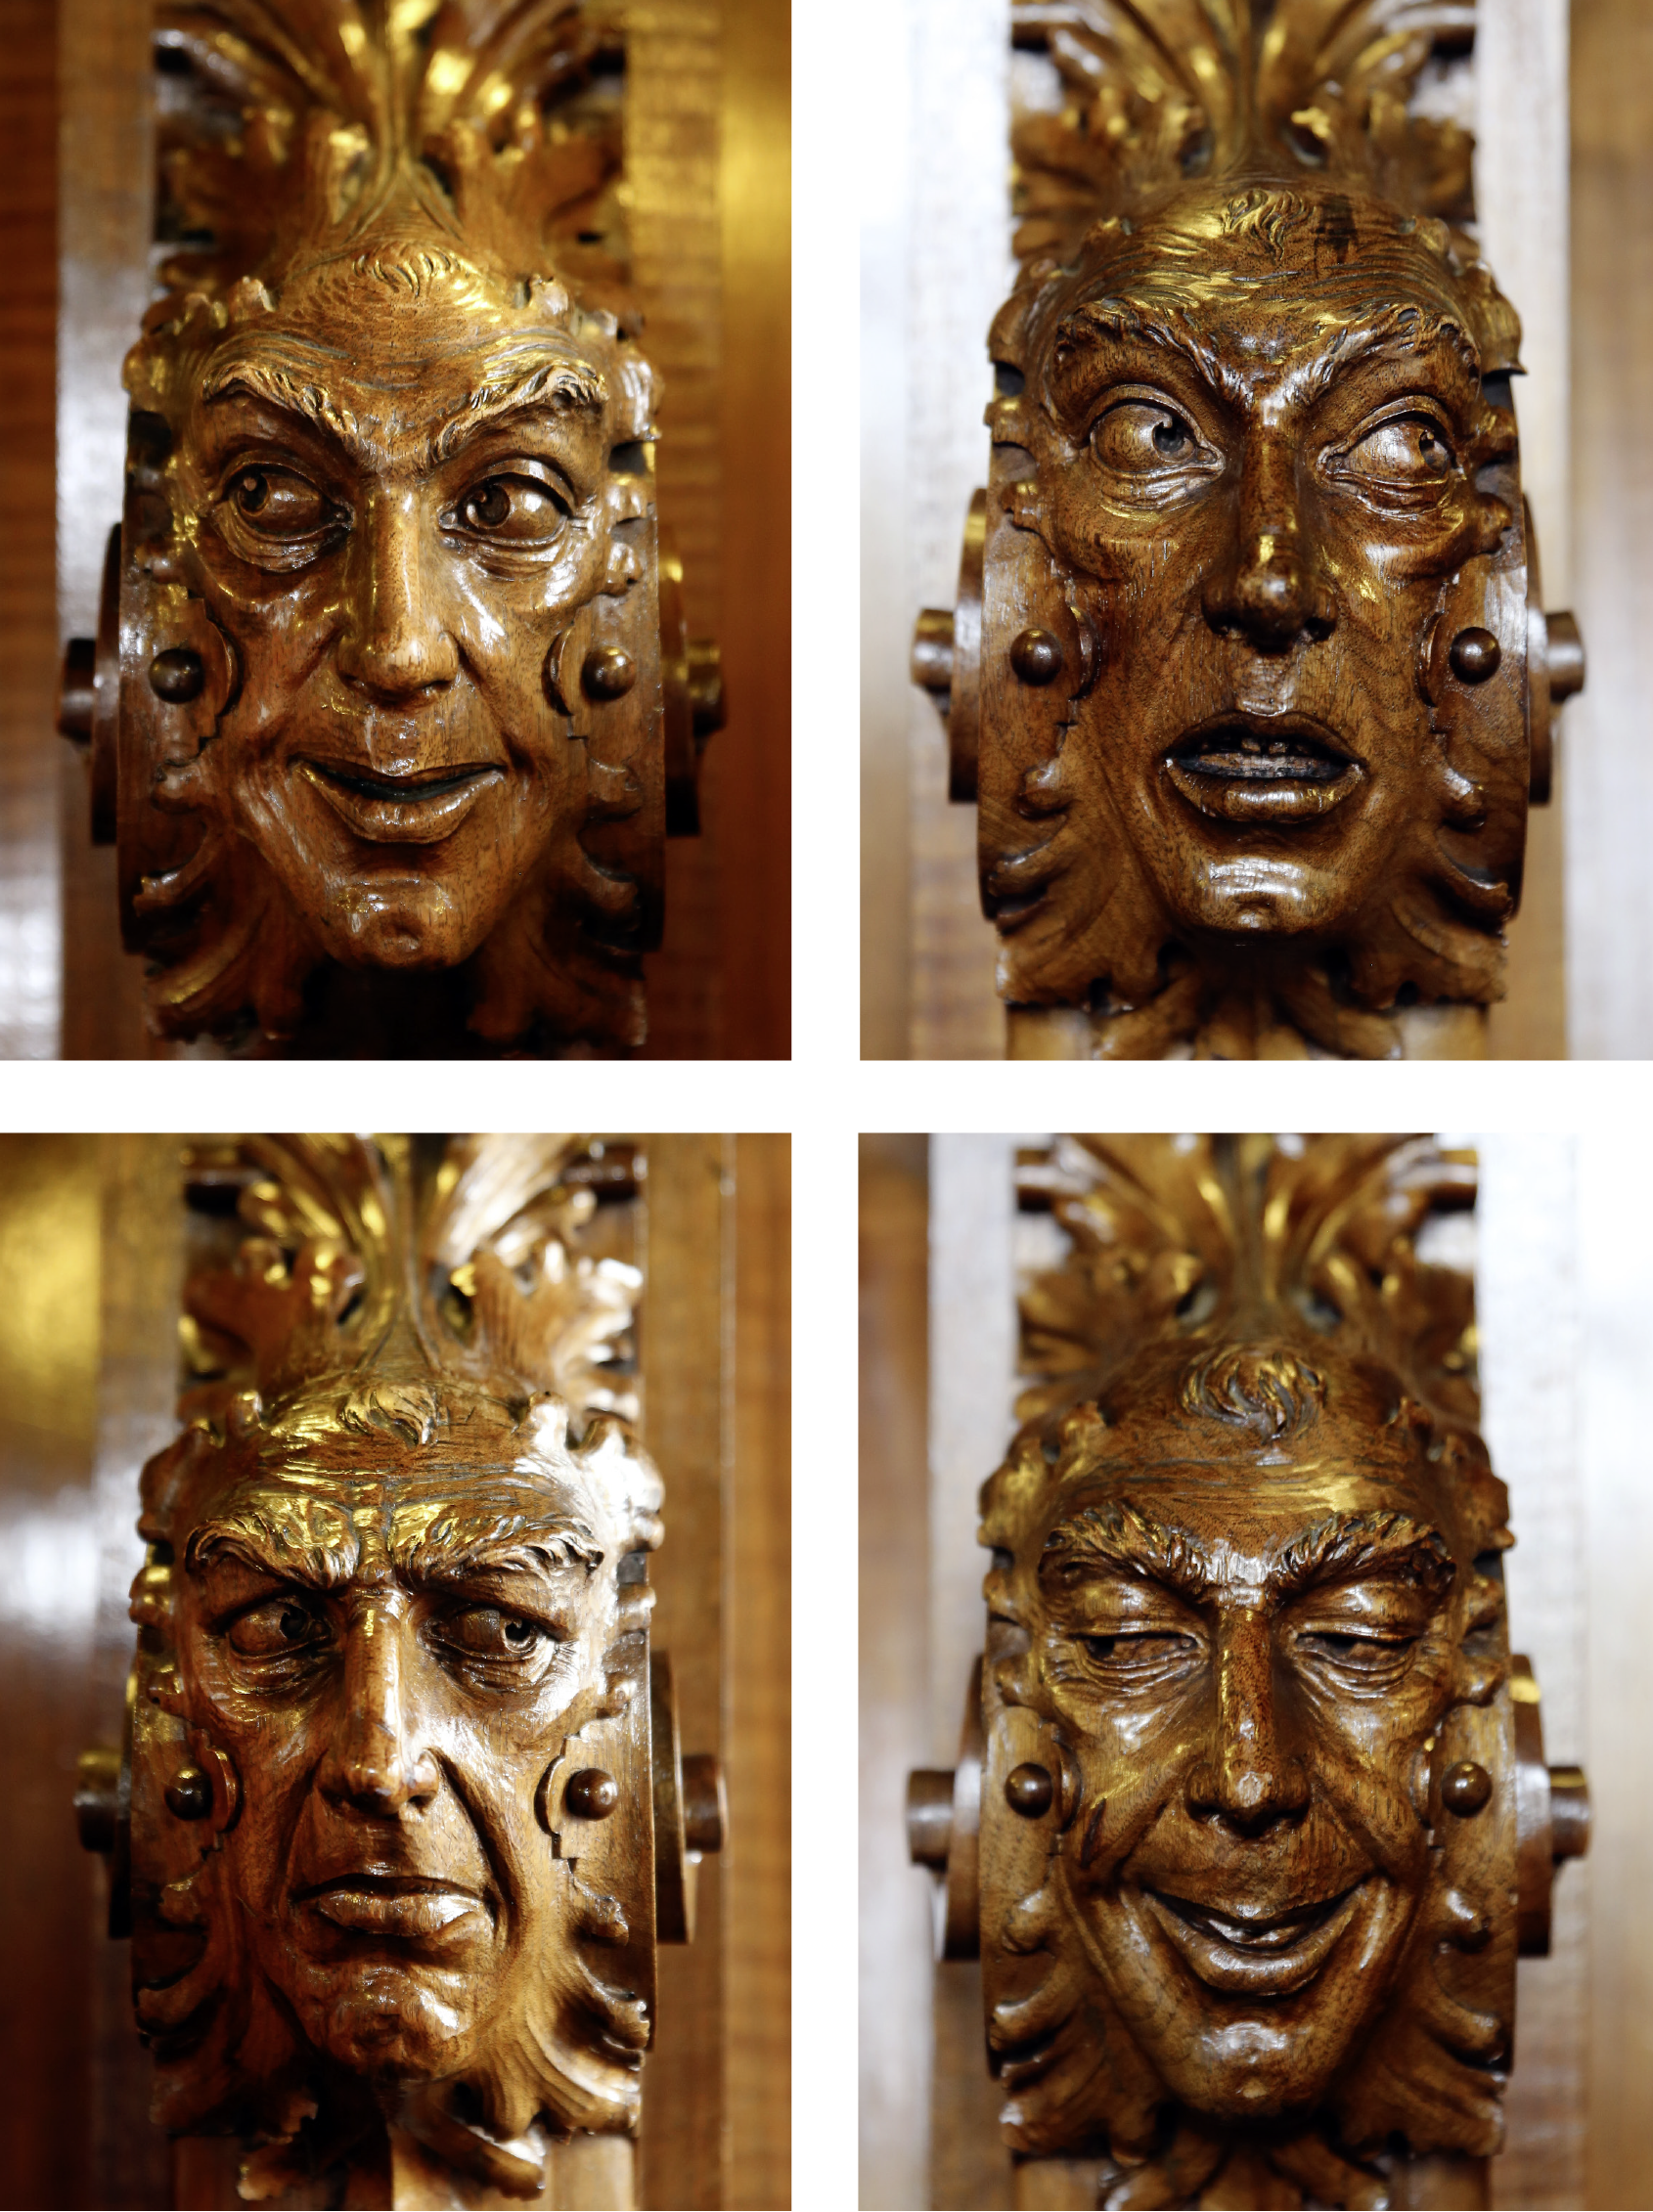 4 Fotos:  Foto (oben links): Nahaufnahme eines aus Holz geschnitzten Gesichts. Die Augen schauen zur linken Seite, der Kopf ist dabei nicht nach links in die Blickrichtung gedreht. Der Mund zeigt den Ansatz eines Lächelns.   Foto (oben rechts): Nahaufnahme eines aus Holz geschnitzten Gesichts. Die Augen sind weit aufgerissen, sie schauen zur rechten Seite. Der Mund steht offen.  Foto (unten links) Nahaufnahme eines aus Holz geschnitzten Gesichts. Die Augenbrauen des Gesichts sind skeptisch nach unten gezogen. Die Augen blicken zur rechten Seite. Der Mund ist geschlossen.  Foto (unten rechts): Nahaufnahme eines aus Holz geschnitzten Gesichts. Die Augen sind halb geschlossen. Die Augen blicken zur linken Seite. Der Mund zeigt ein schelmisches Grinsen.